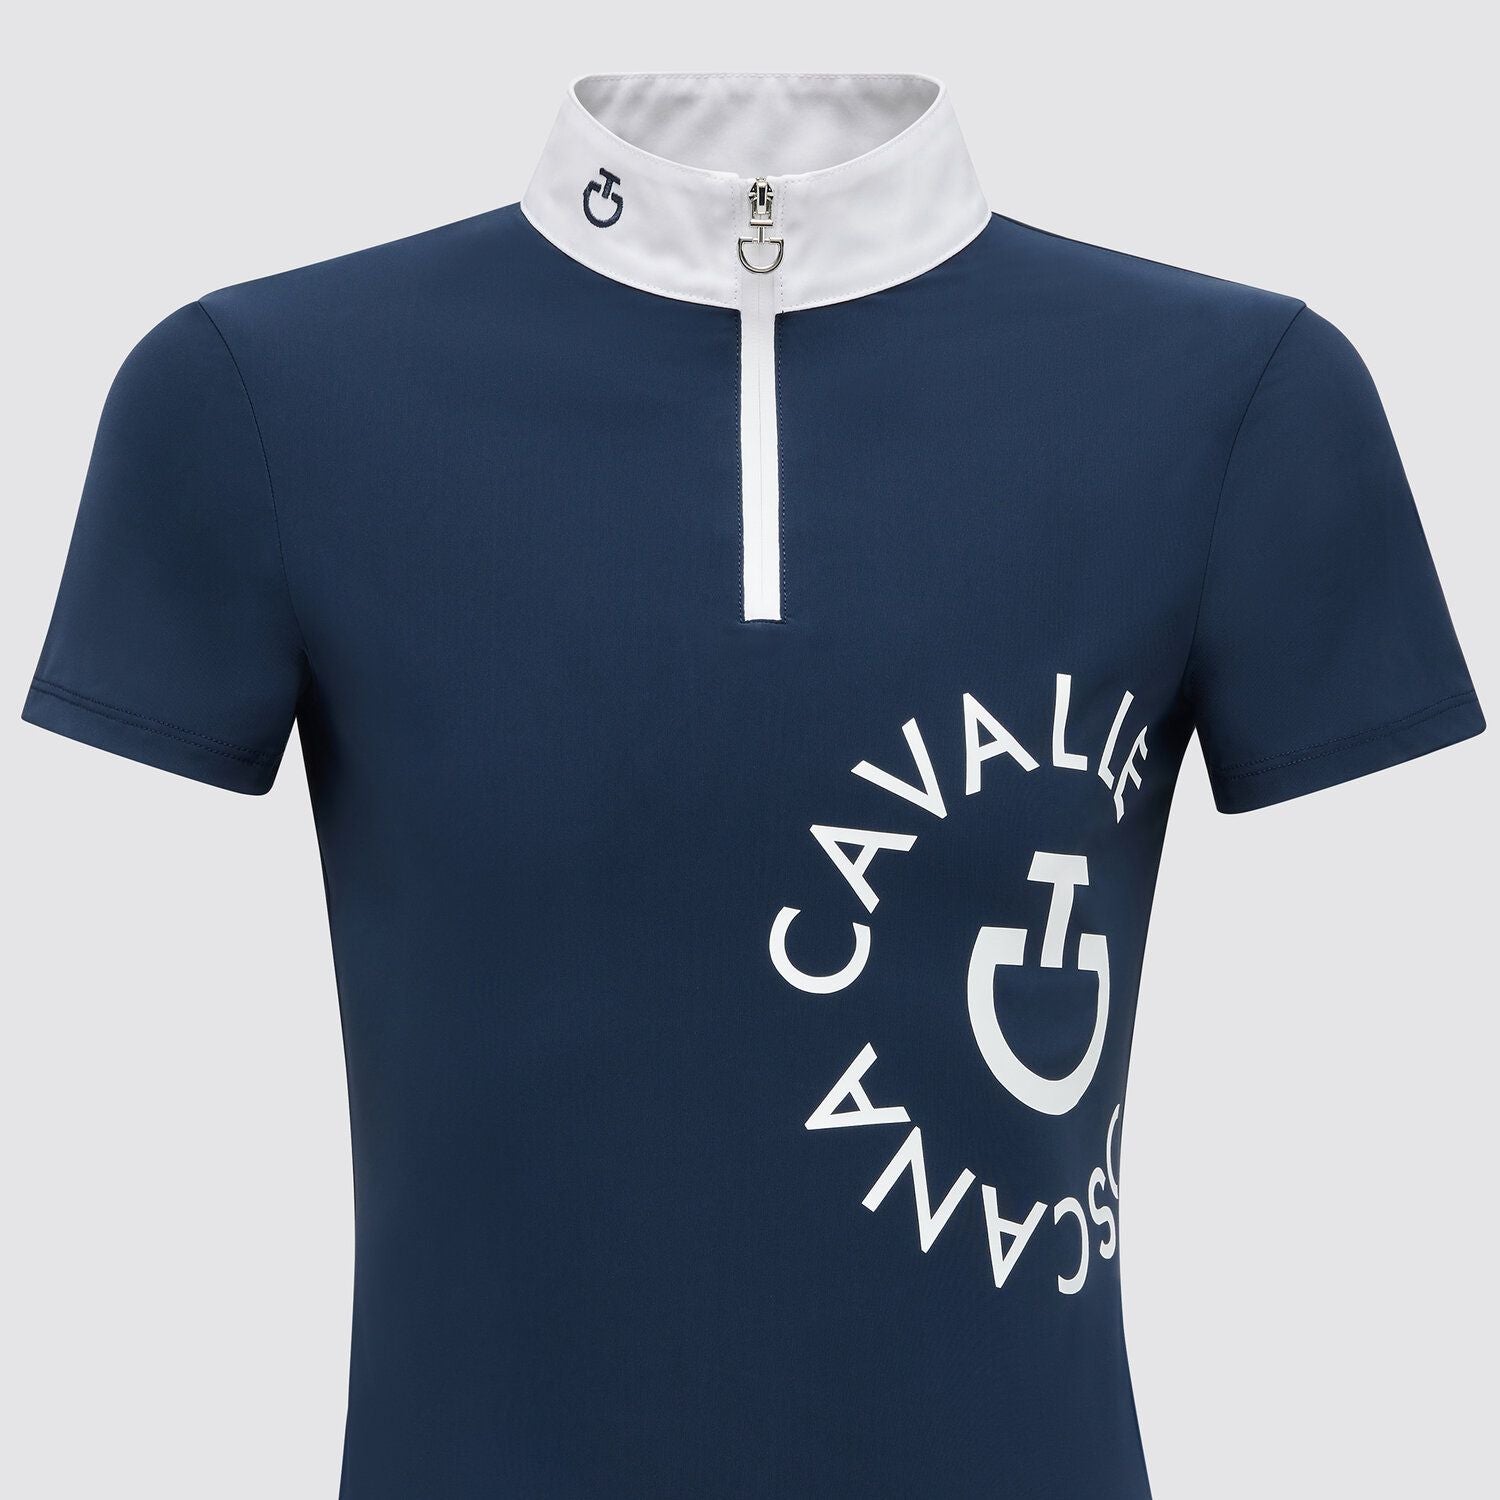 Champion's Choice - Das ultimative Reißverschluss-Shirt für Mädchen